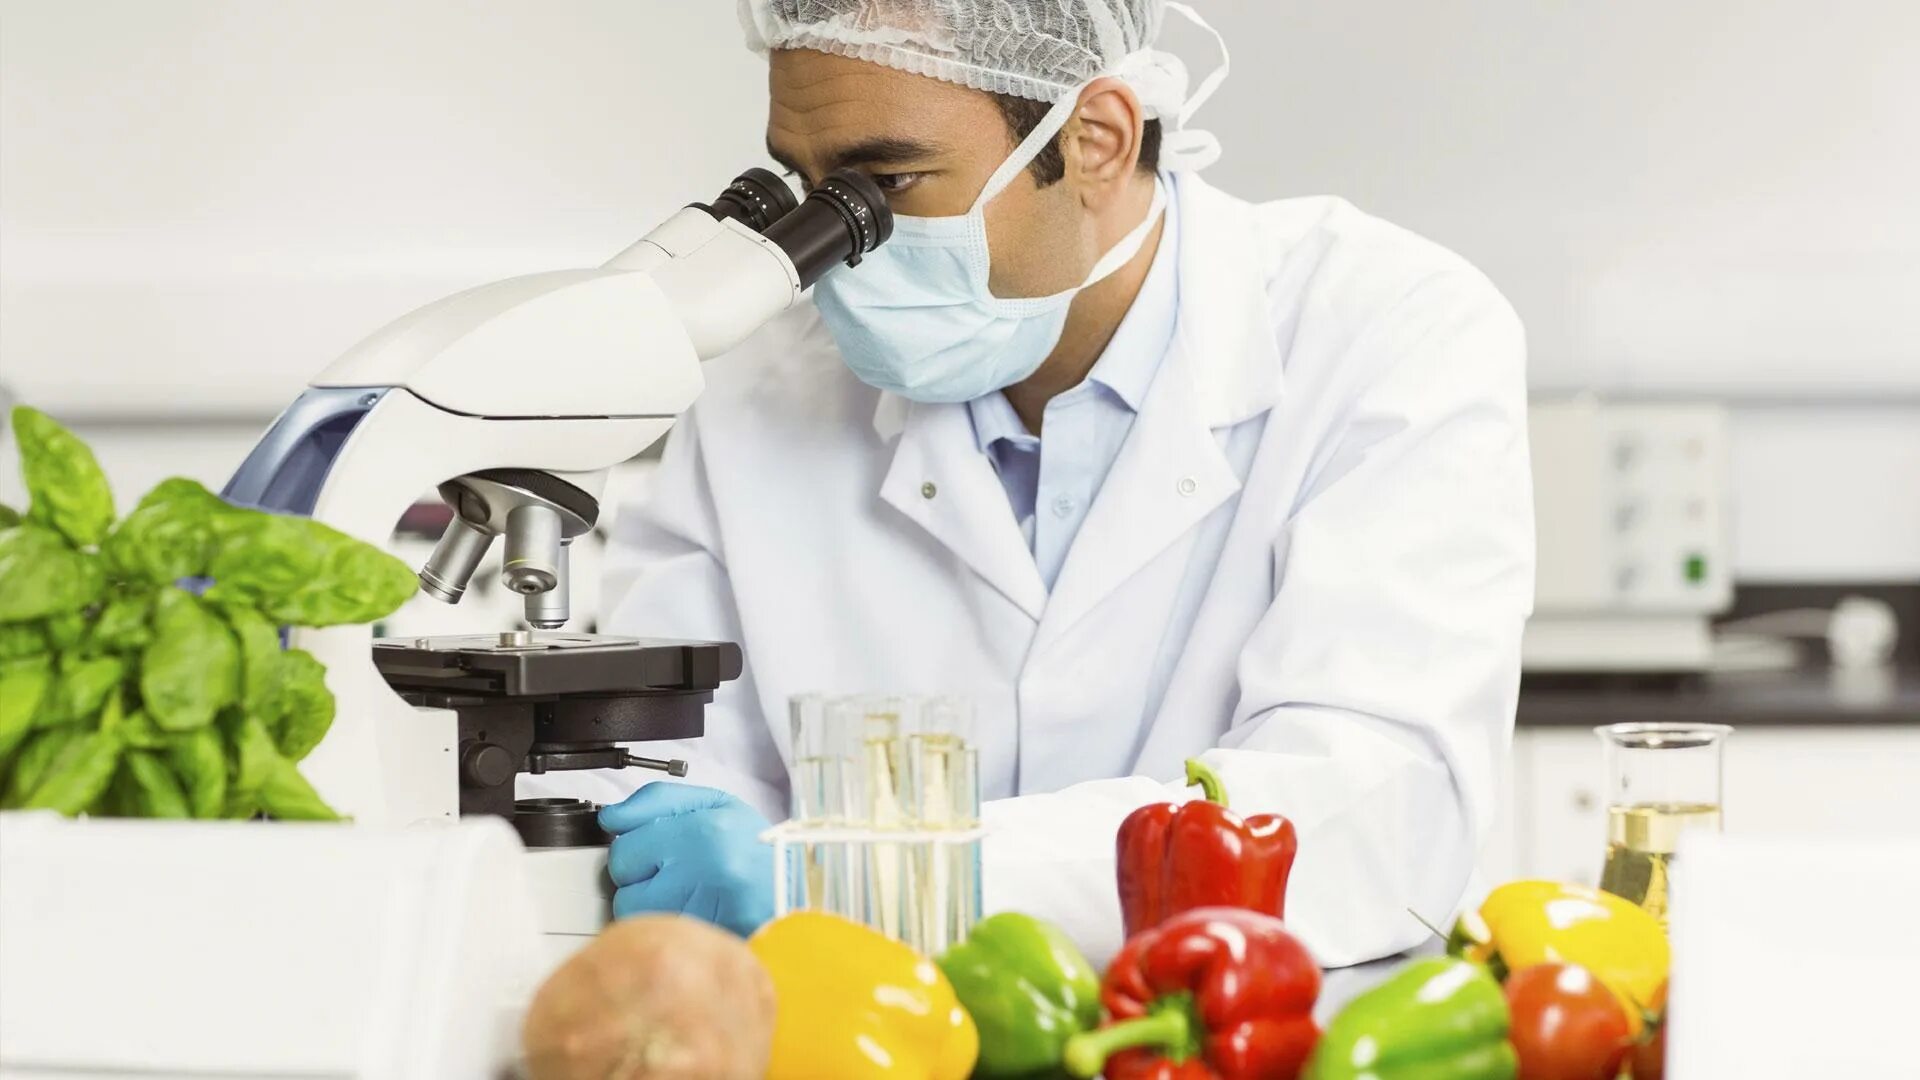 Овощи в лаборатории. Исследование пищевых продуктов. Контроль качества пищевых продуктов. Лабораторные исследования продуктов. Испытания пищевой продукции